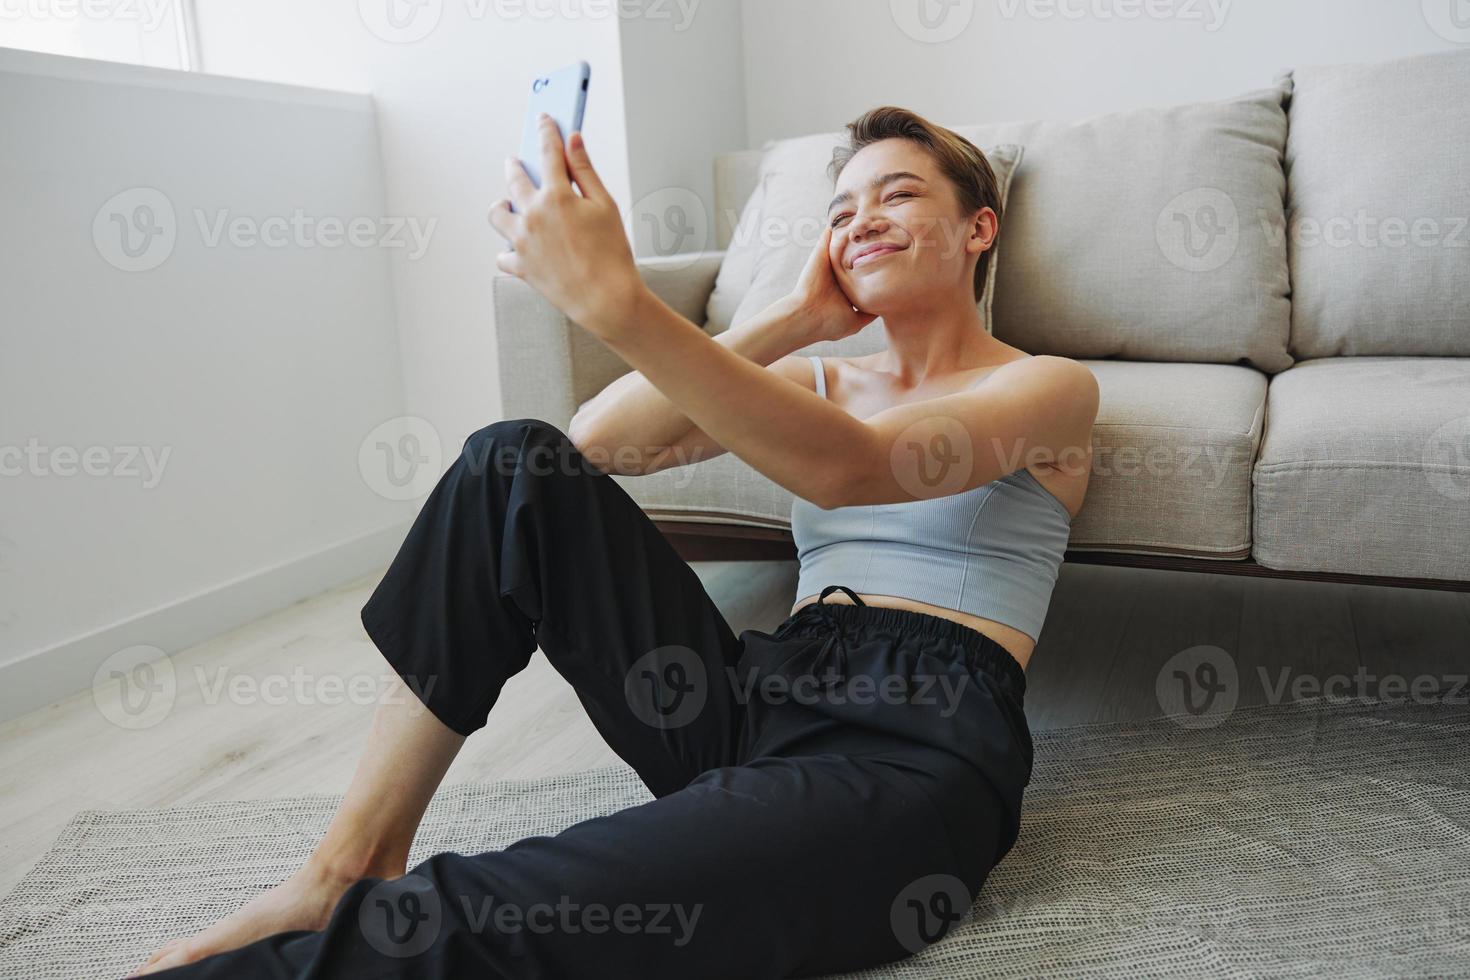 mujer blogger selfies en teléfono, selfies y en línea conversaciones para seguidores, adolescente desarrolla social medios de comunicación, persona de libre dedicación desde hogar foto